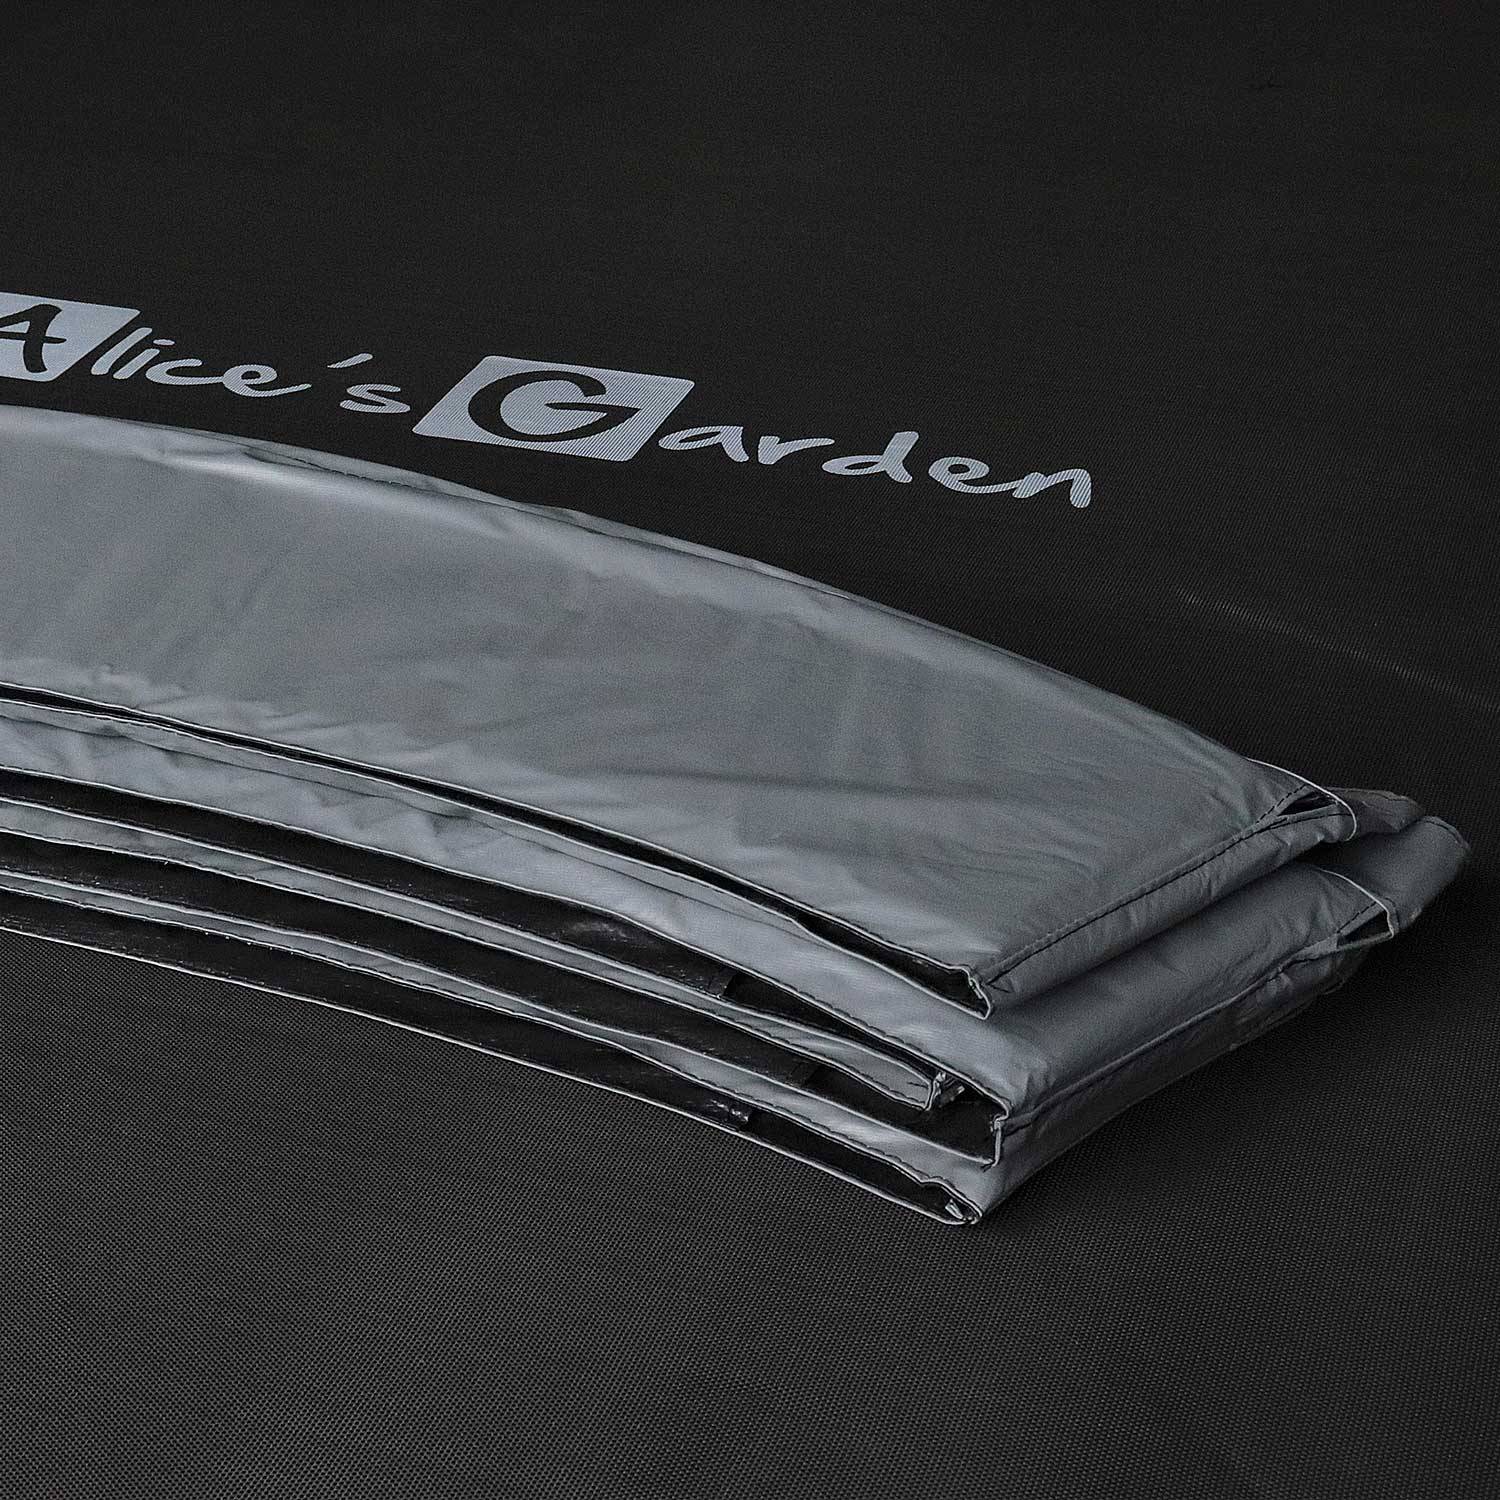 Cama elástica redonda 305 cm gris con red de seguridad interna - Mars INNER - Nuevo modelo - cama elástica de jardín 3,05 m 305 cm | Calidad PRO. | Normas de la UE. Photo5